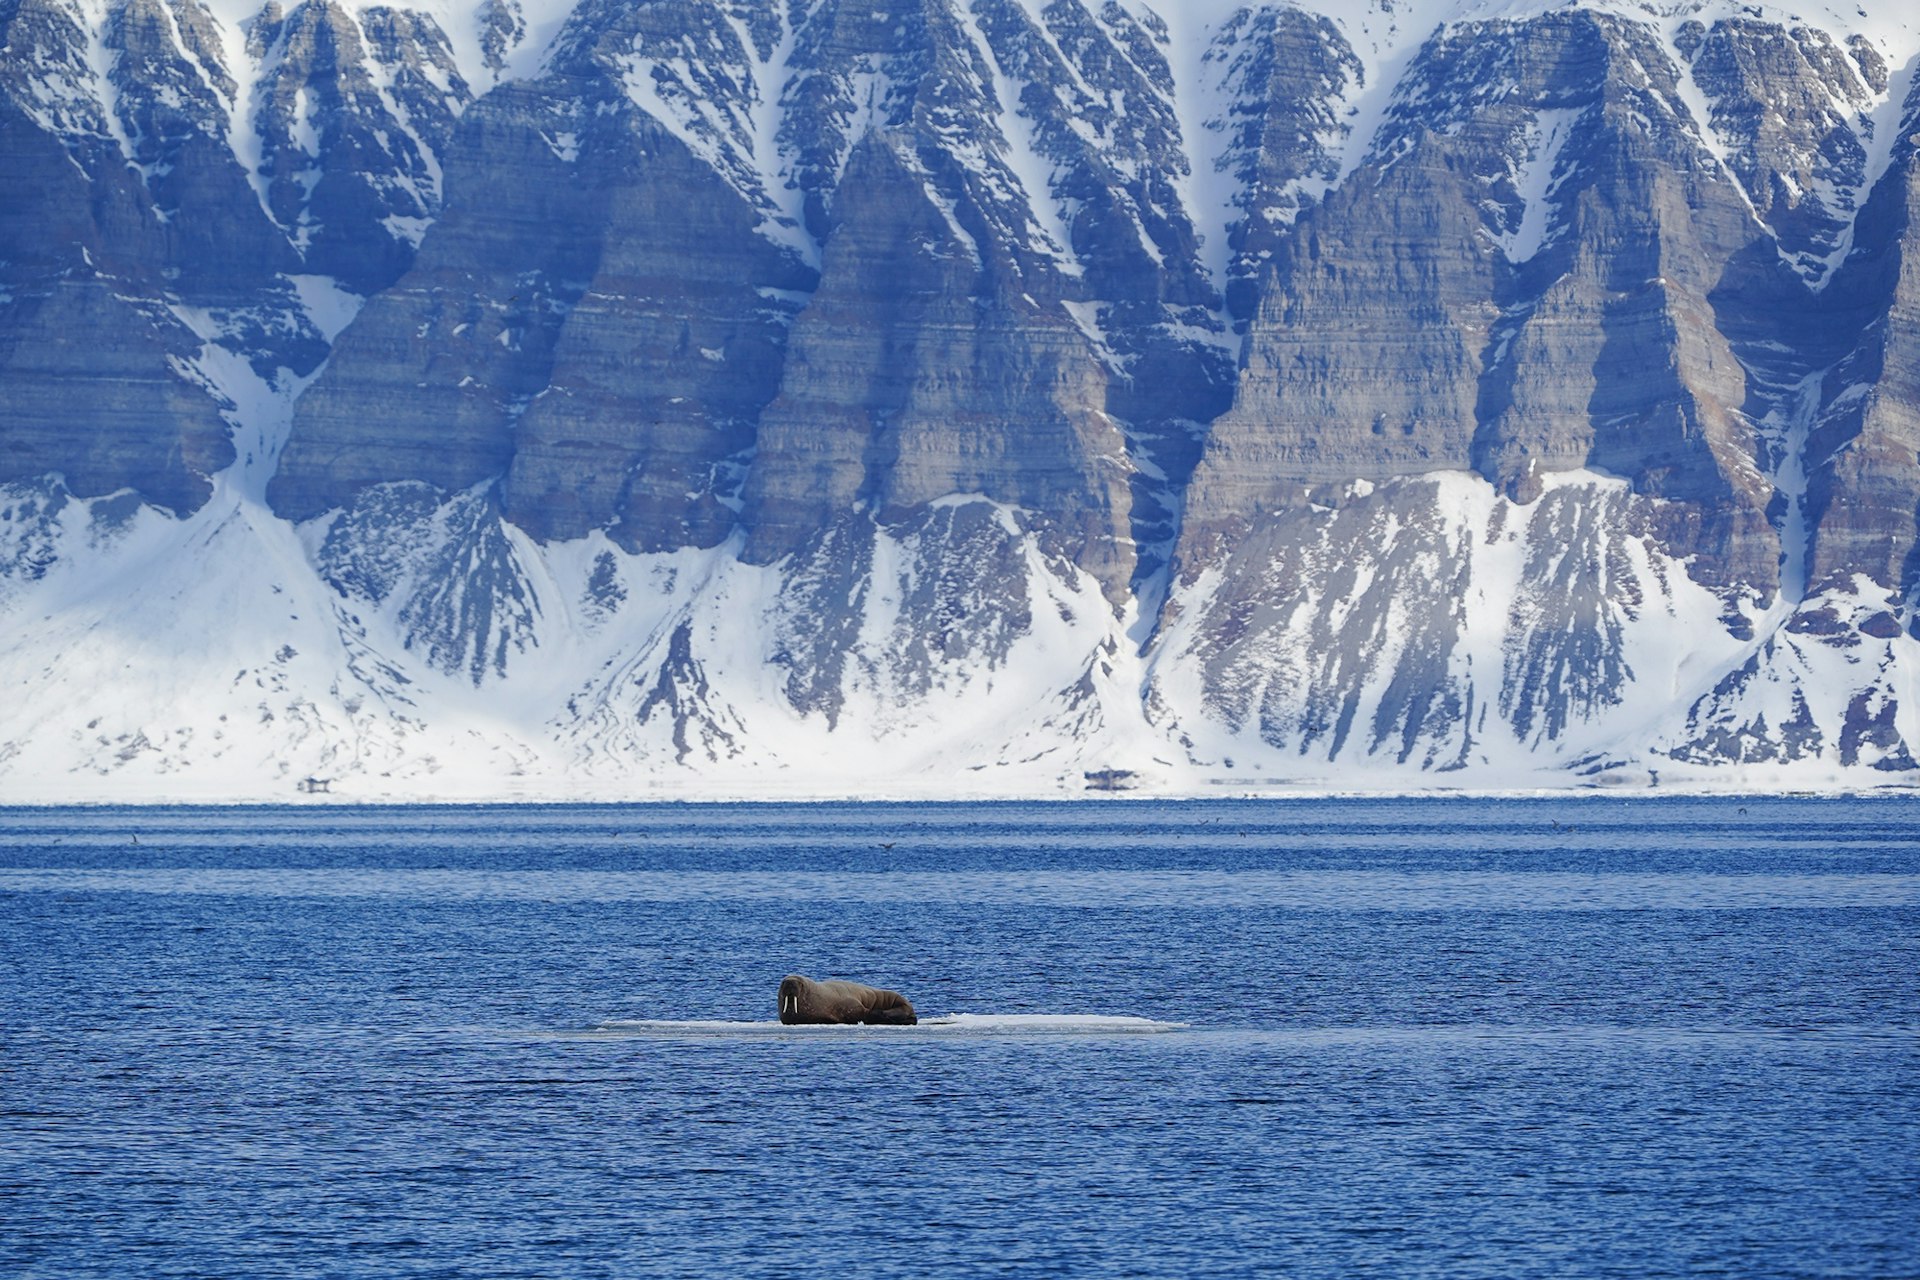 Walrus in Svalbard waters